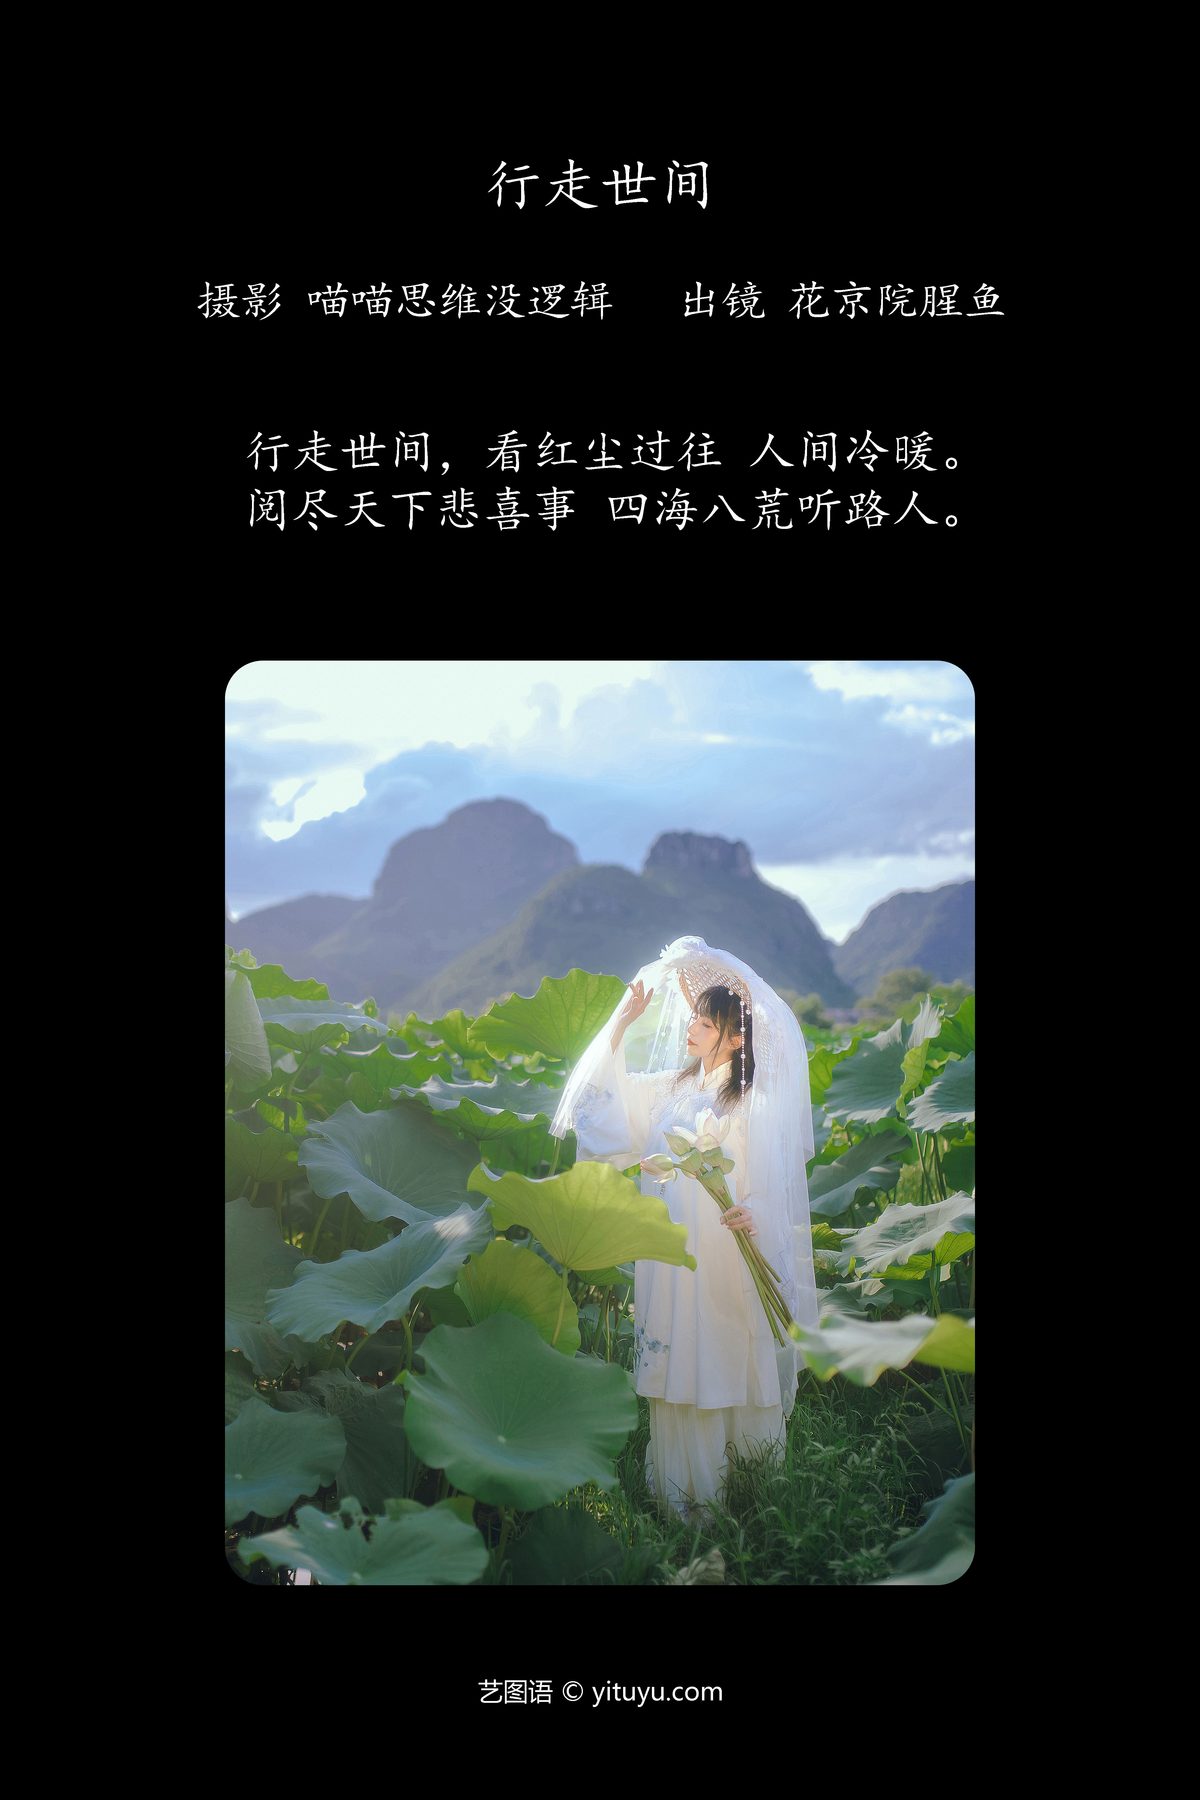 YiTuYu艺图语 Vol 5524 Hua Jing Yuan Xing Yu 0002 1973031879.jpg